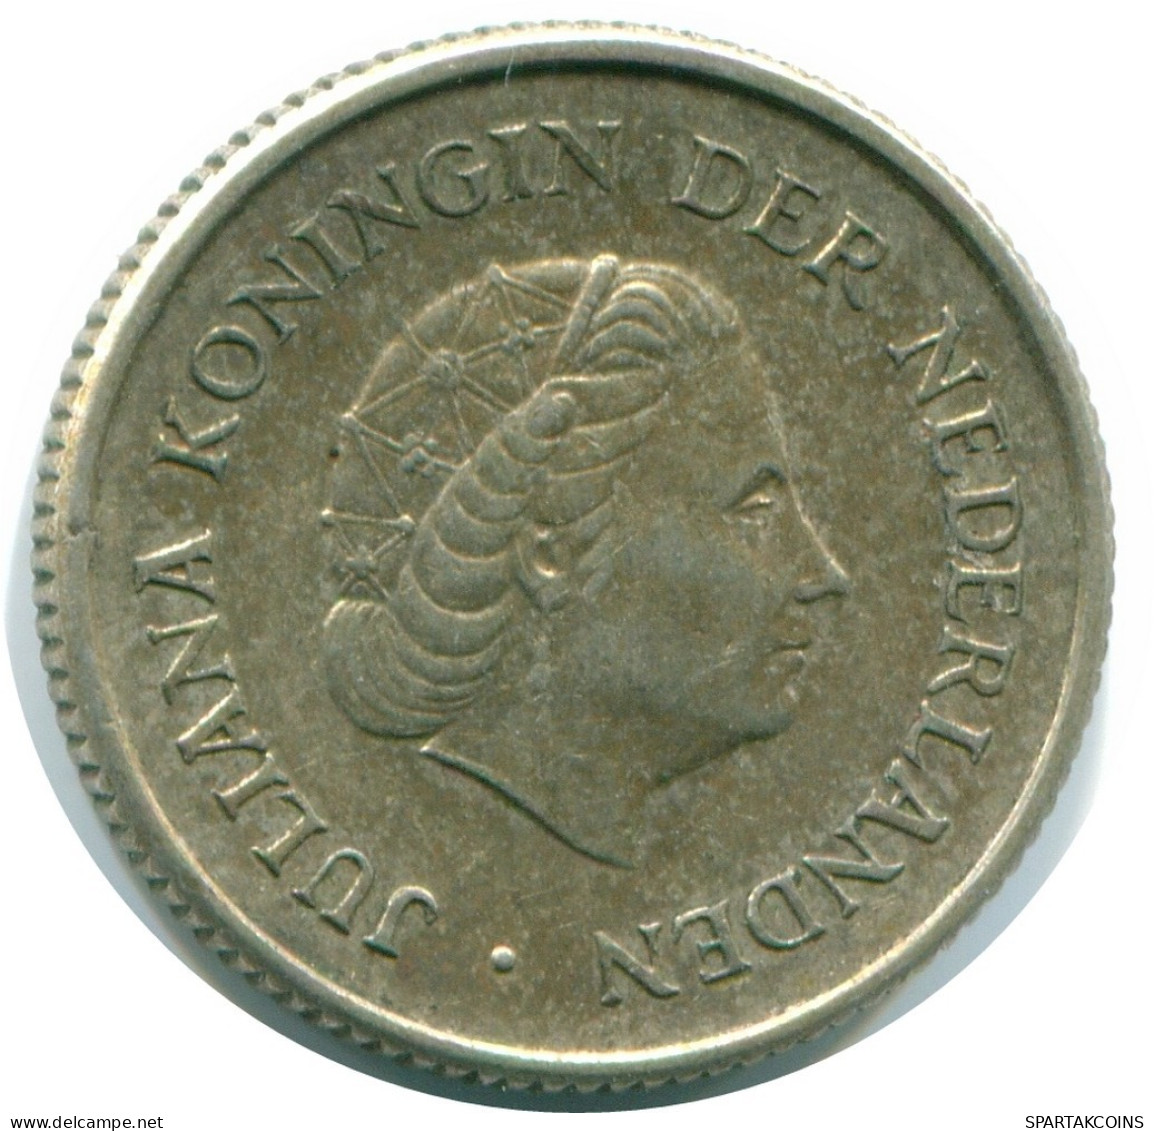 1/4 GULDEN 1967 NIEDERLÄNDISCHE ANTILLEN SILBER Koloniale Münze #NL11529.4.D.A - Antilles Néerlandaises